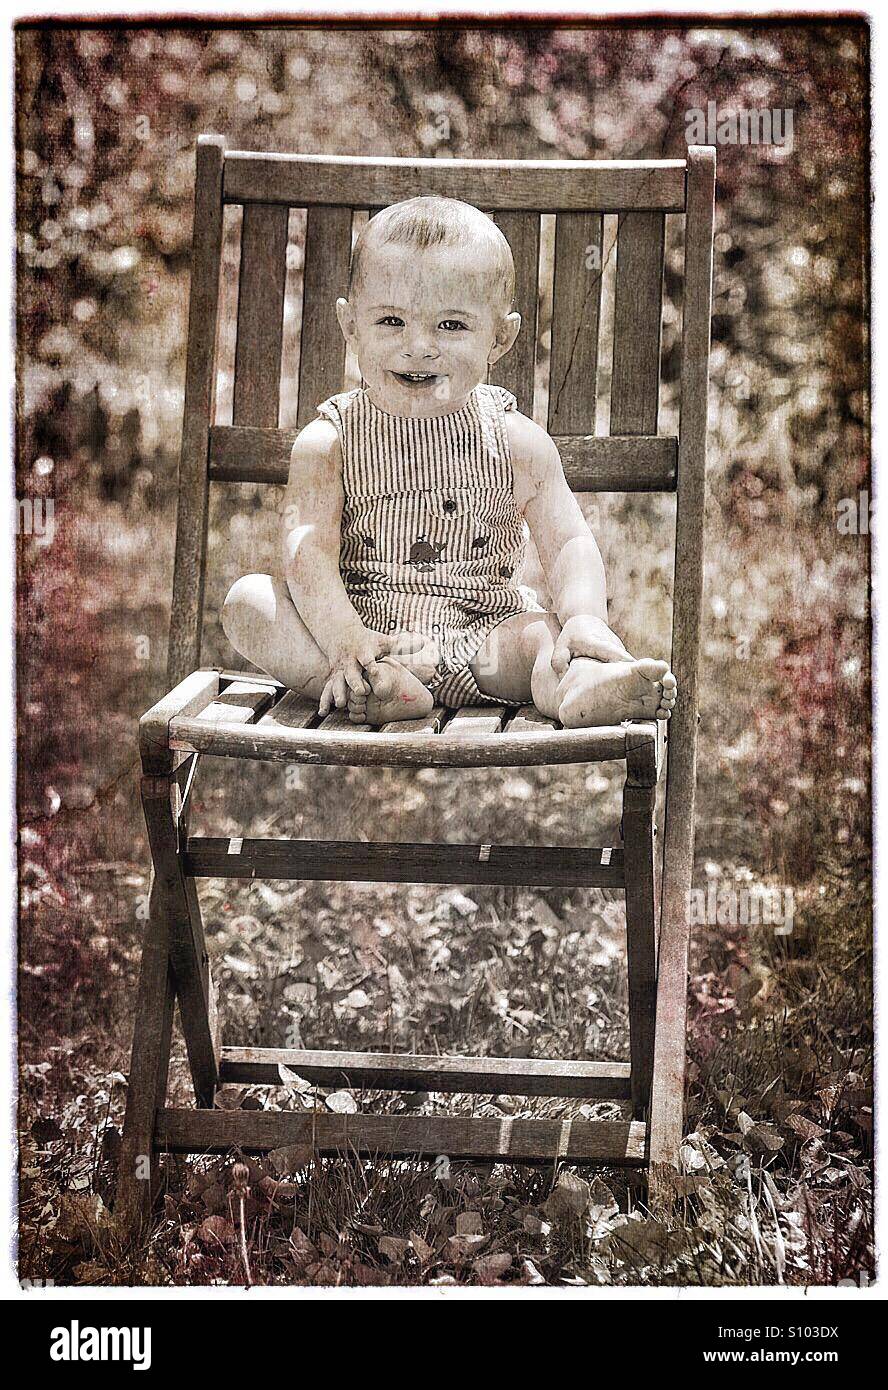 Bébé avec grand sourire assis sur une chaise à l'extérieur. Banque D'Images